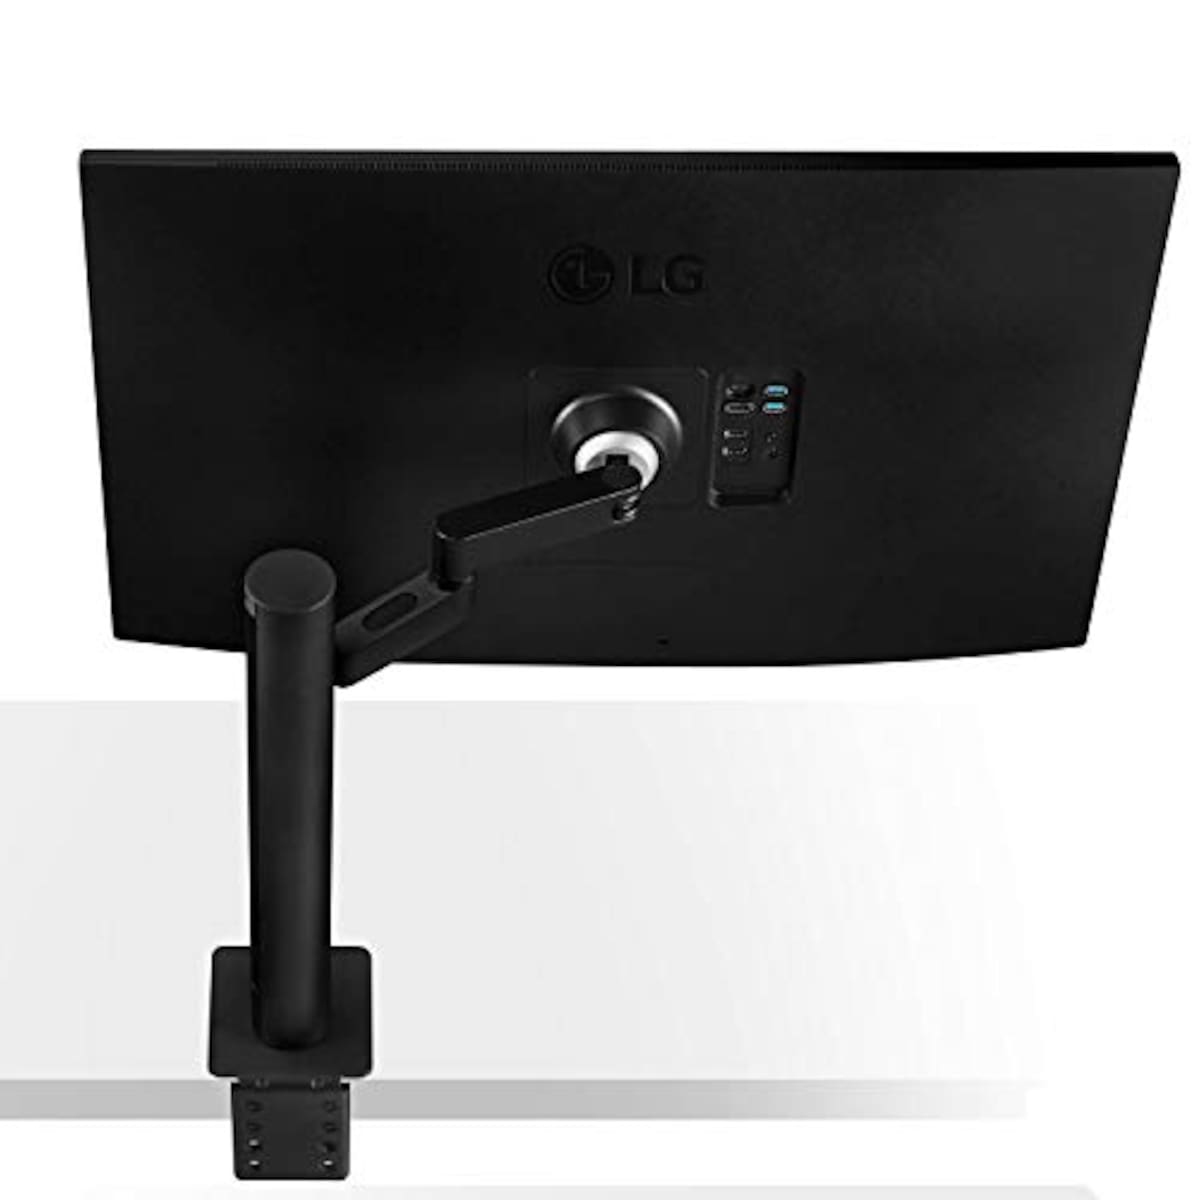  LG エルゴノミクス スタンド モニター ディスプレイ 32UN880-B 31.5インチ/4K/HDR/IPS非光沢/USB Type-C,HDMI×2、DP/FreeSync/スピーカー/チルト,スイベル,高さ調節,ピボット対応/フリッカーセーフ,ブルーライト低減/3年安心・無輝点保証画像5 